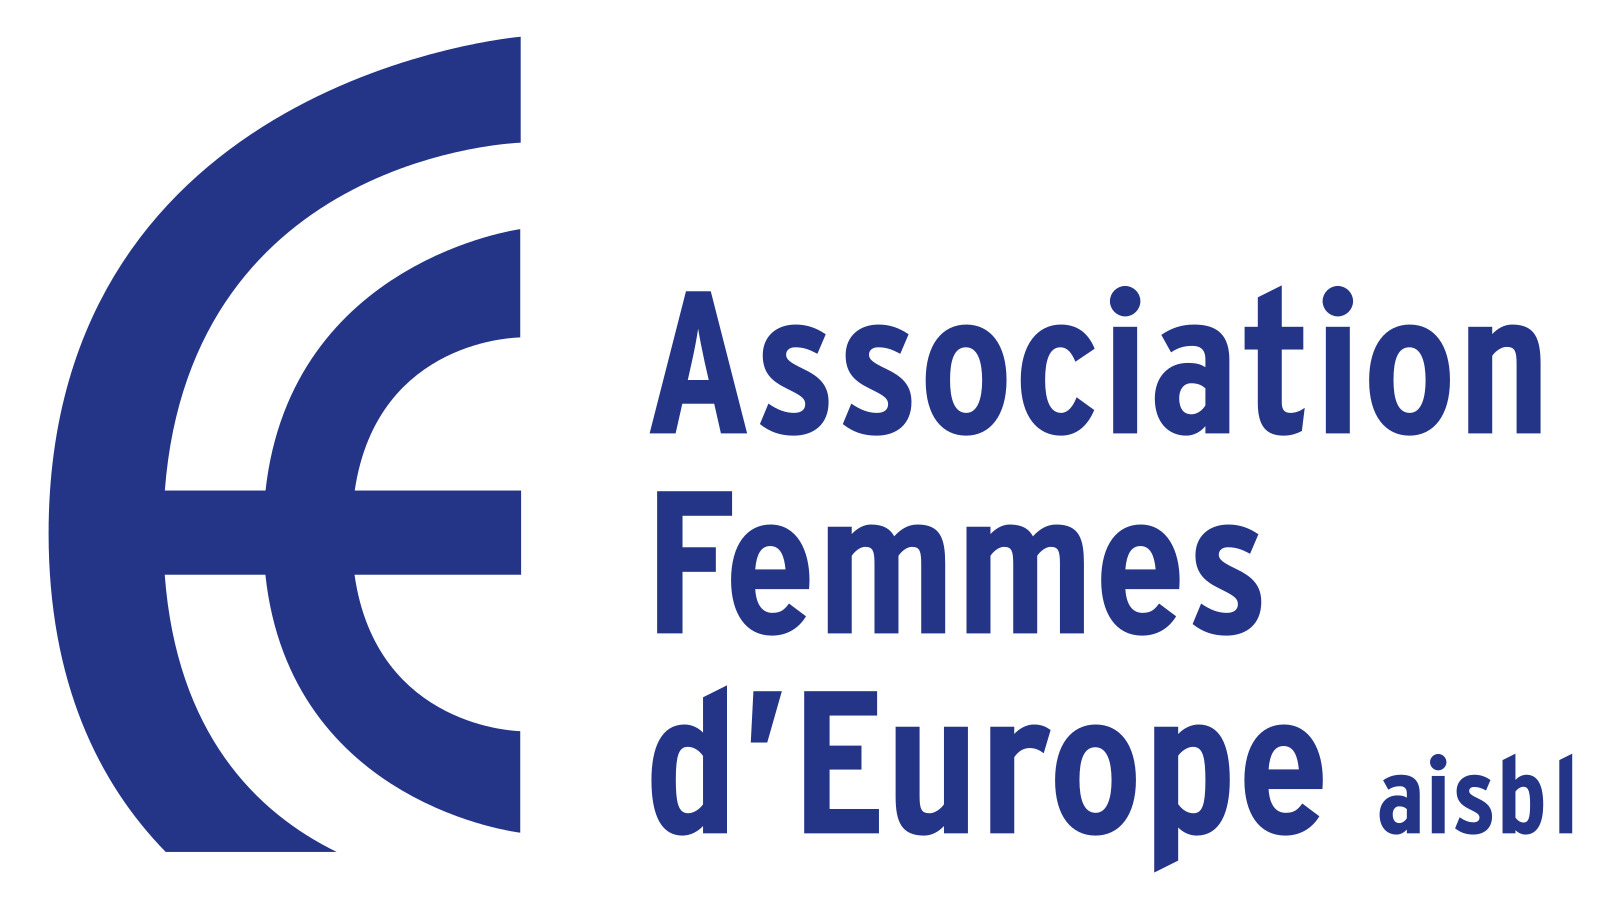 Association femmes d’Europe